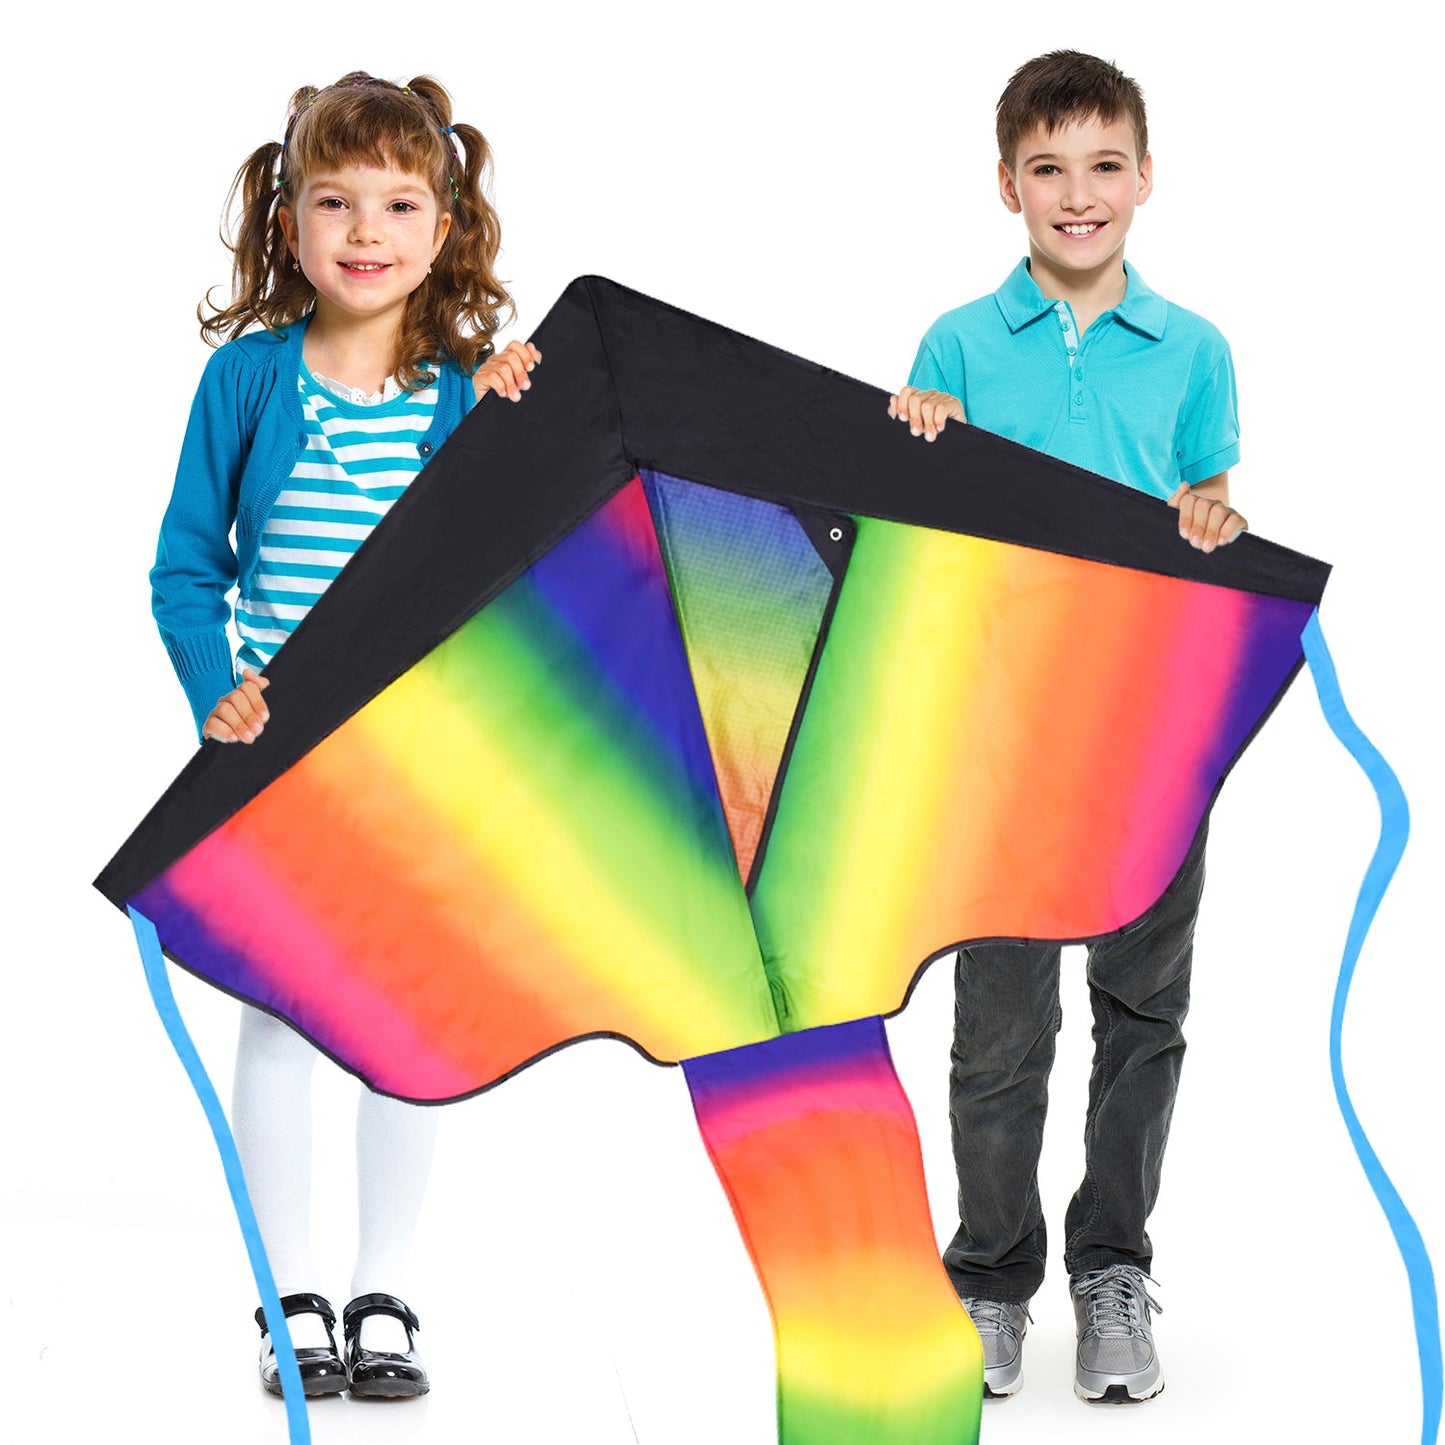 Rainbow Delta 1 Kite - Sun Kites